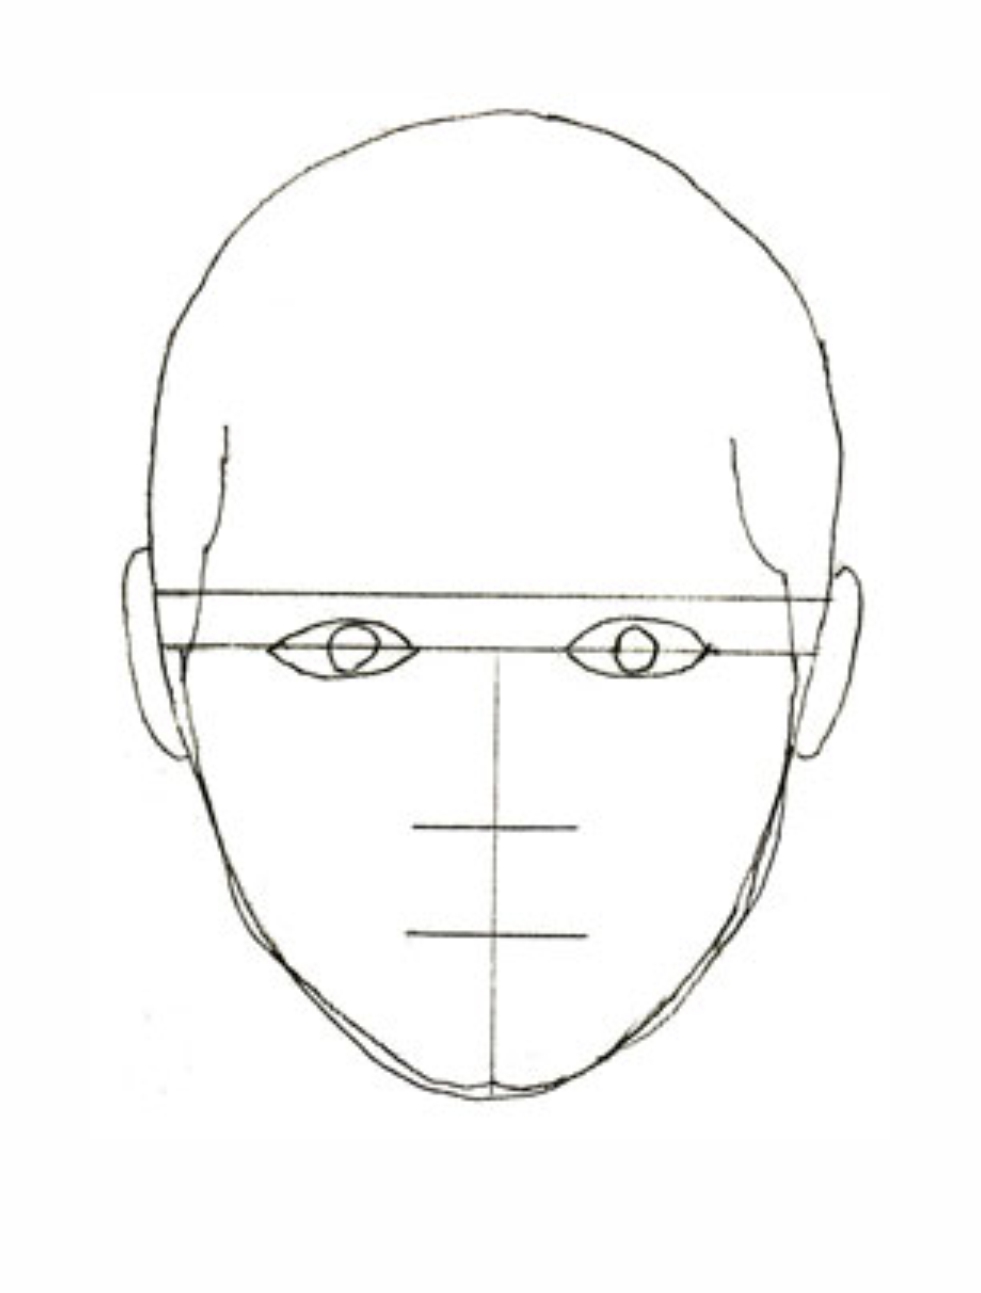 Урок рисования: Как нарисовать лицо человека поэтапно карандашом. 3 этап